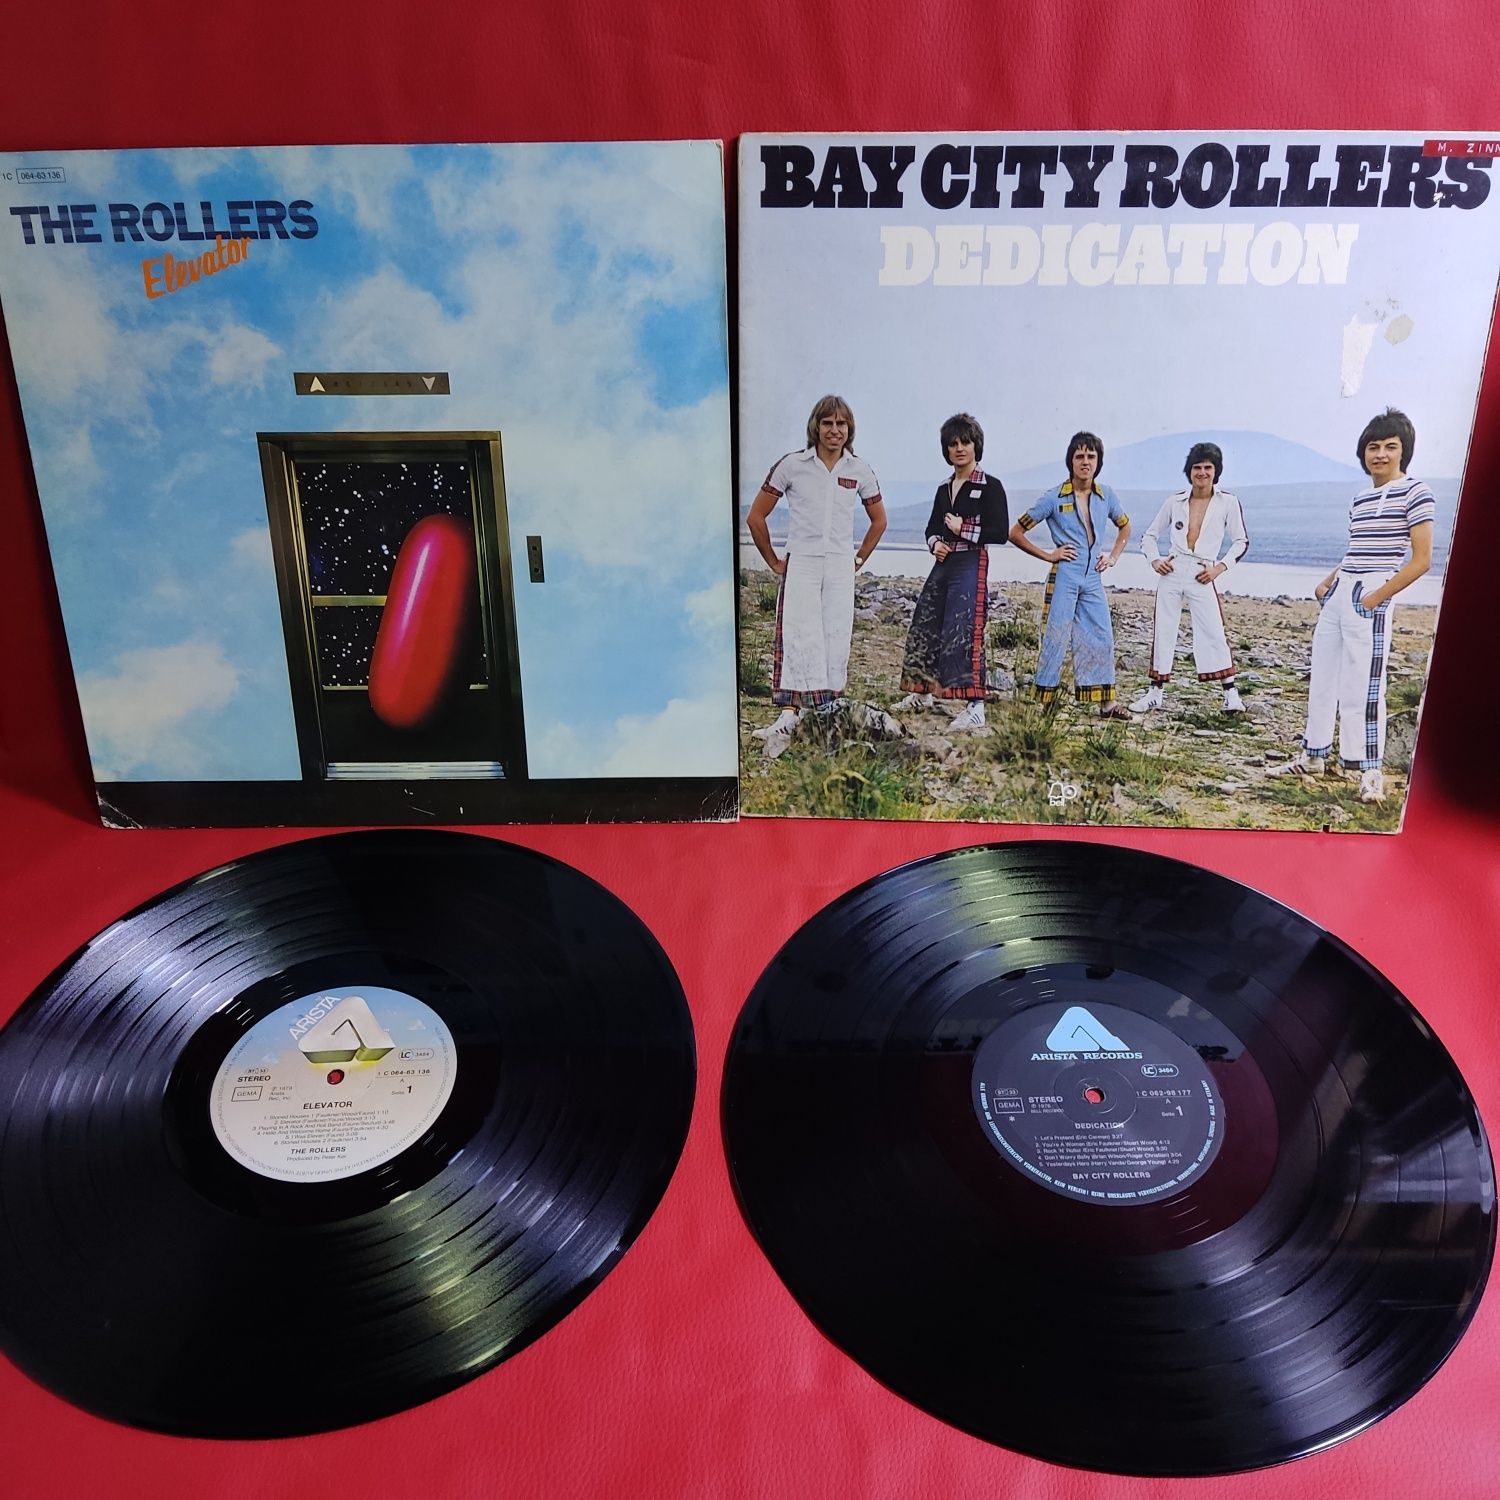 Bay City Rollers - Фірмові вінілові платівки.1975/76/77/79/81